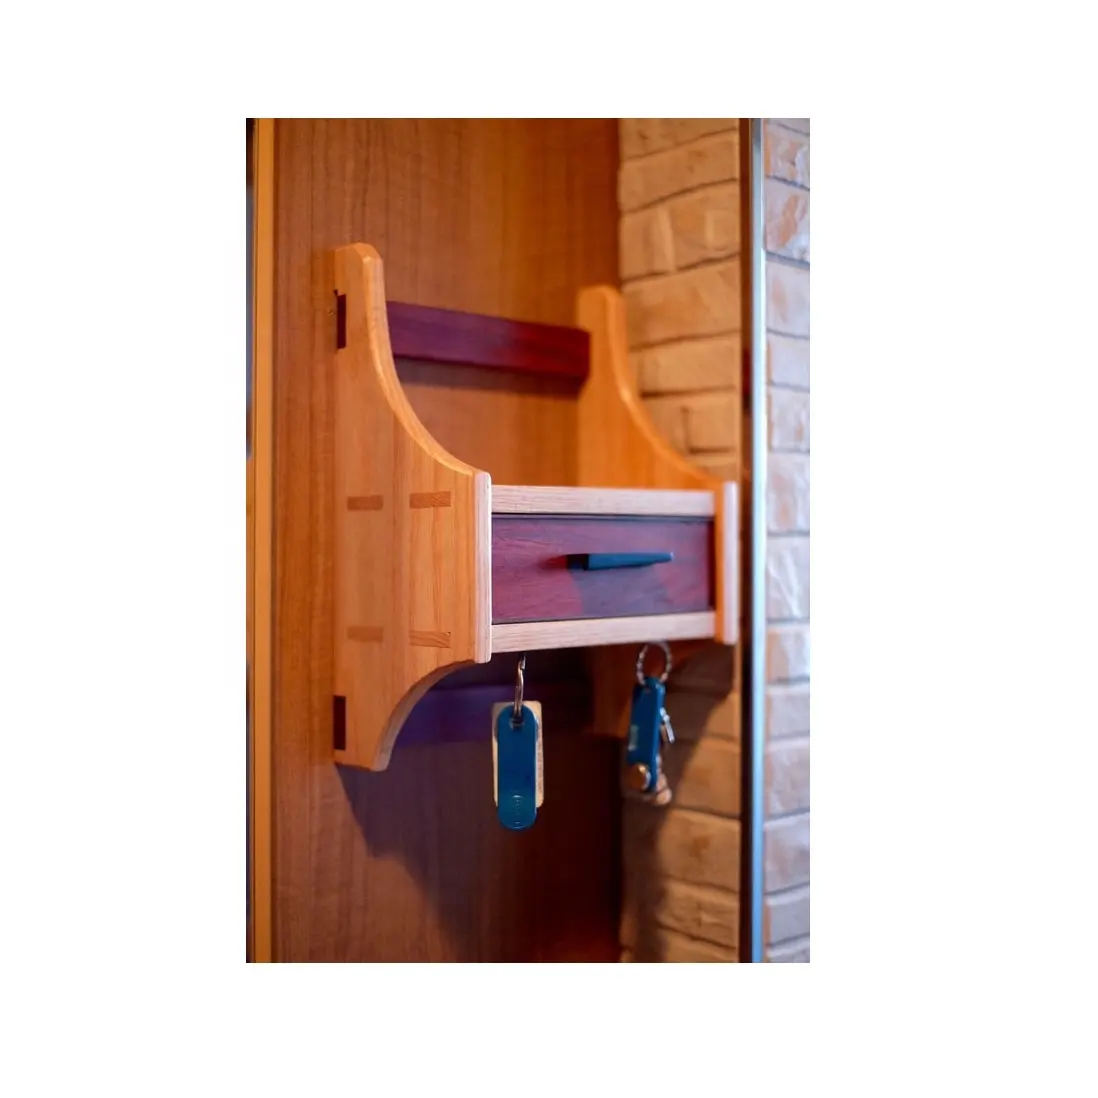 Portachiavi in legno supporto Mobile per parete con elegante portachiavi Design portachiavi per la decorazione della parete della decorazione domestica